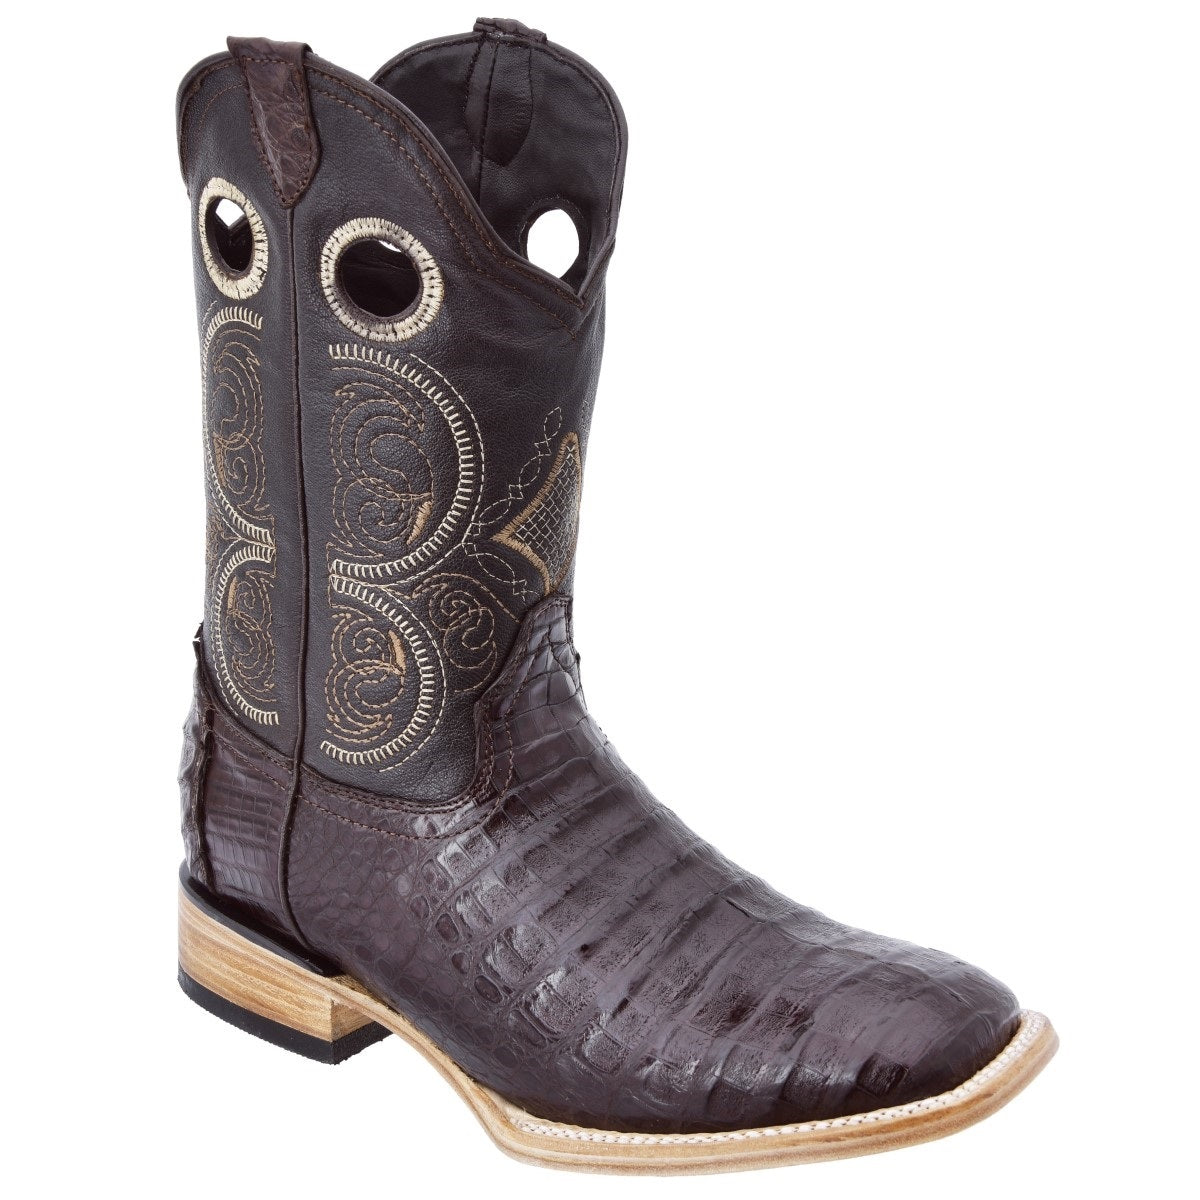 Botas Vaqueras TM-WD0306 - Western Boots